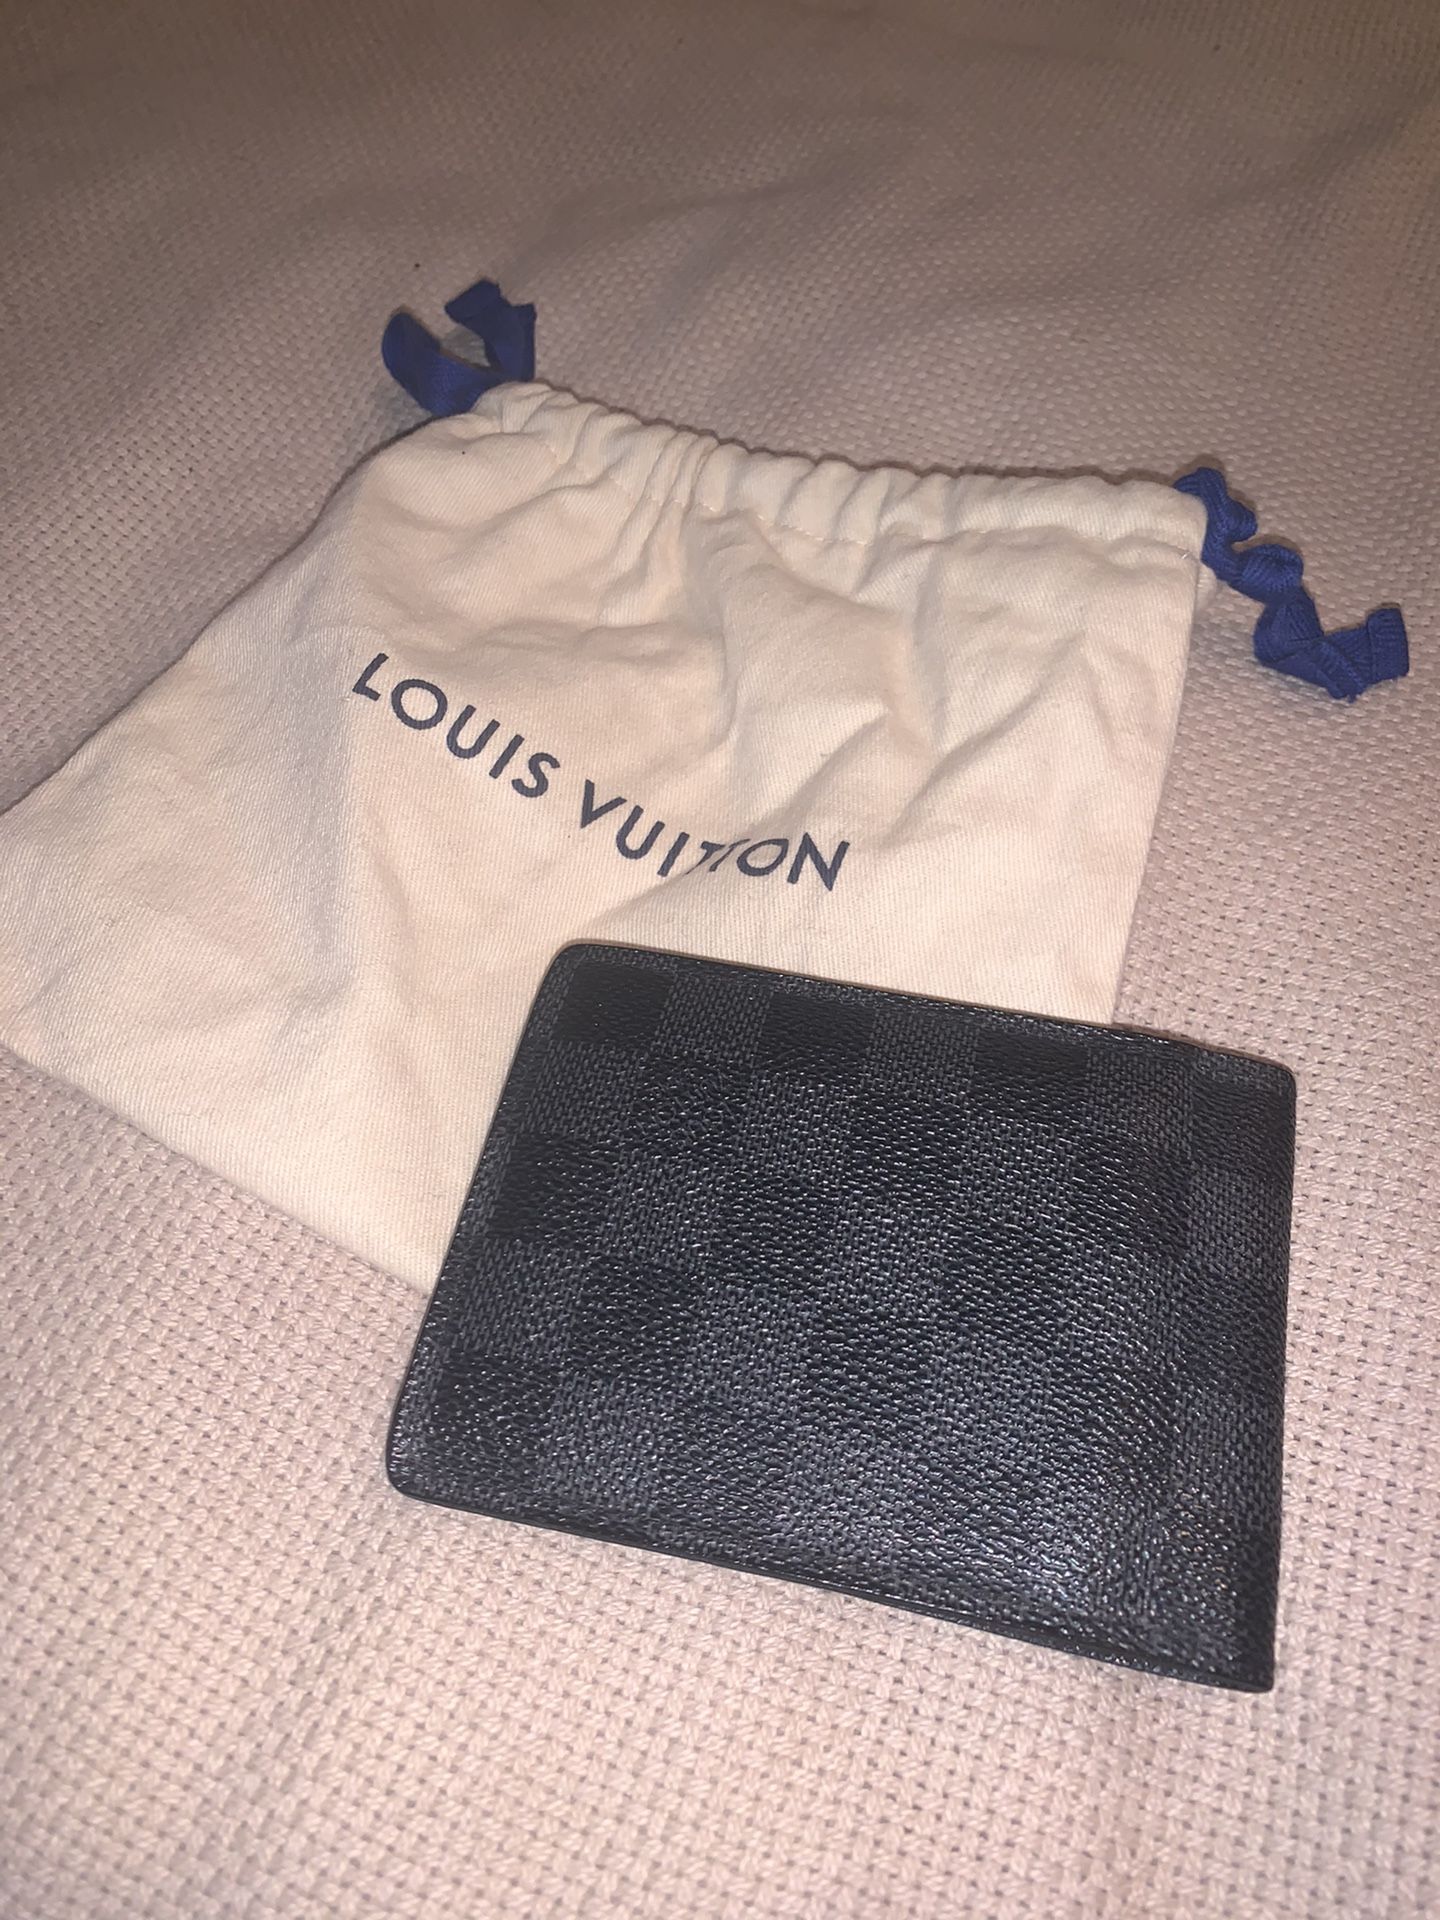 Louis Vuitton men’s wallet